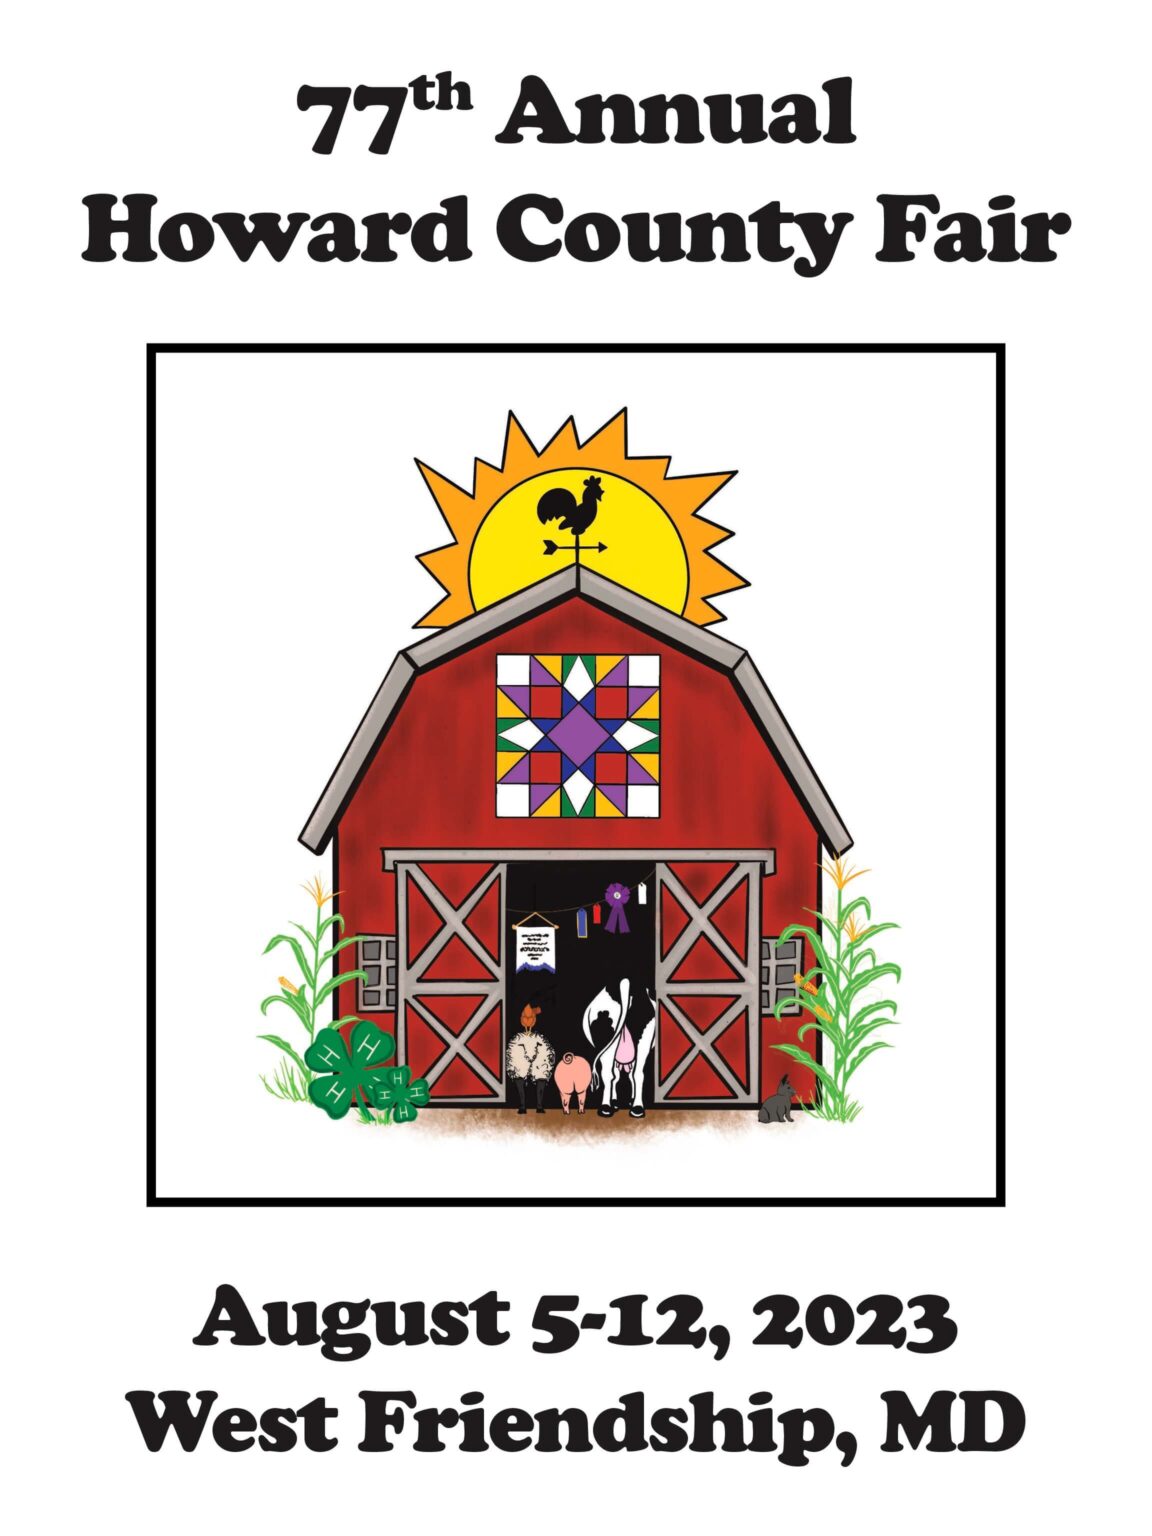 2023 Howard County Fair The Howard County Fair